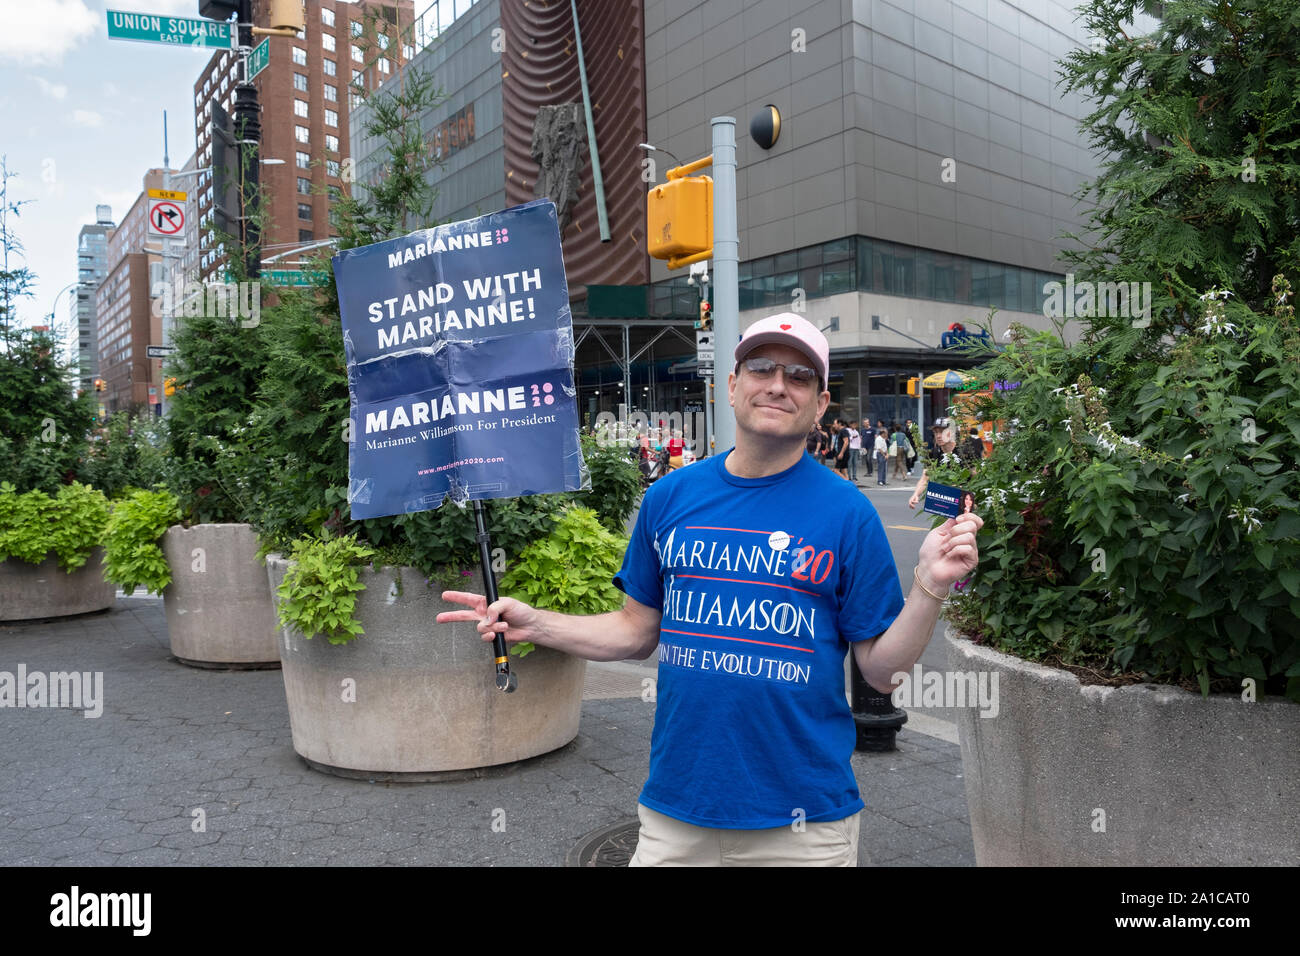 Un homme d'âge moyen des campagnes pour Marianne Williamson, un opprimé parti démocratique, candidat à la présidence. Dans la région de Union Square Park, à Manhattan, New York. Banque D'Images